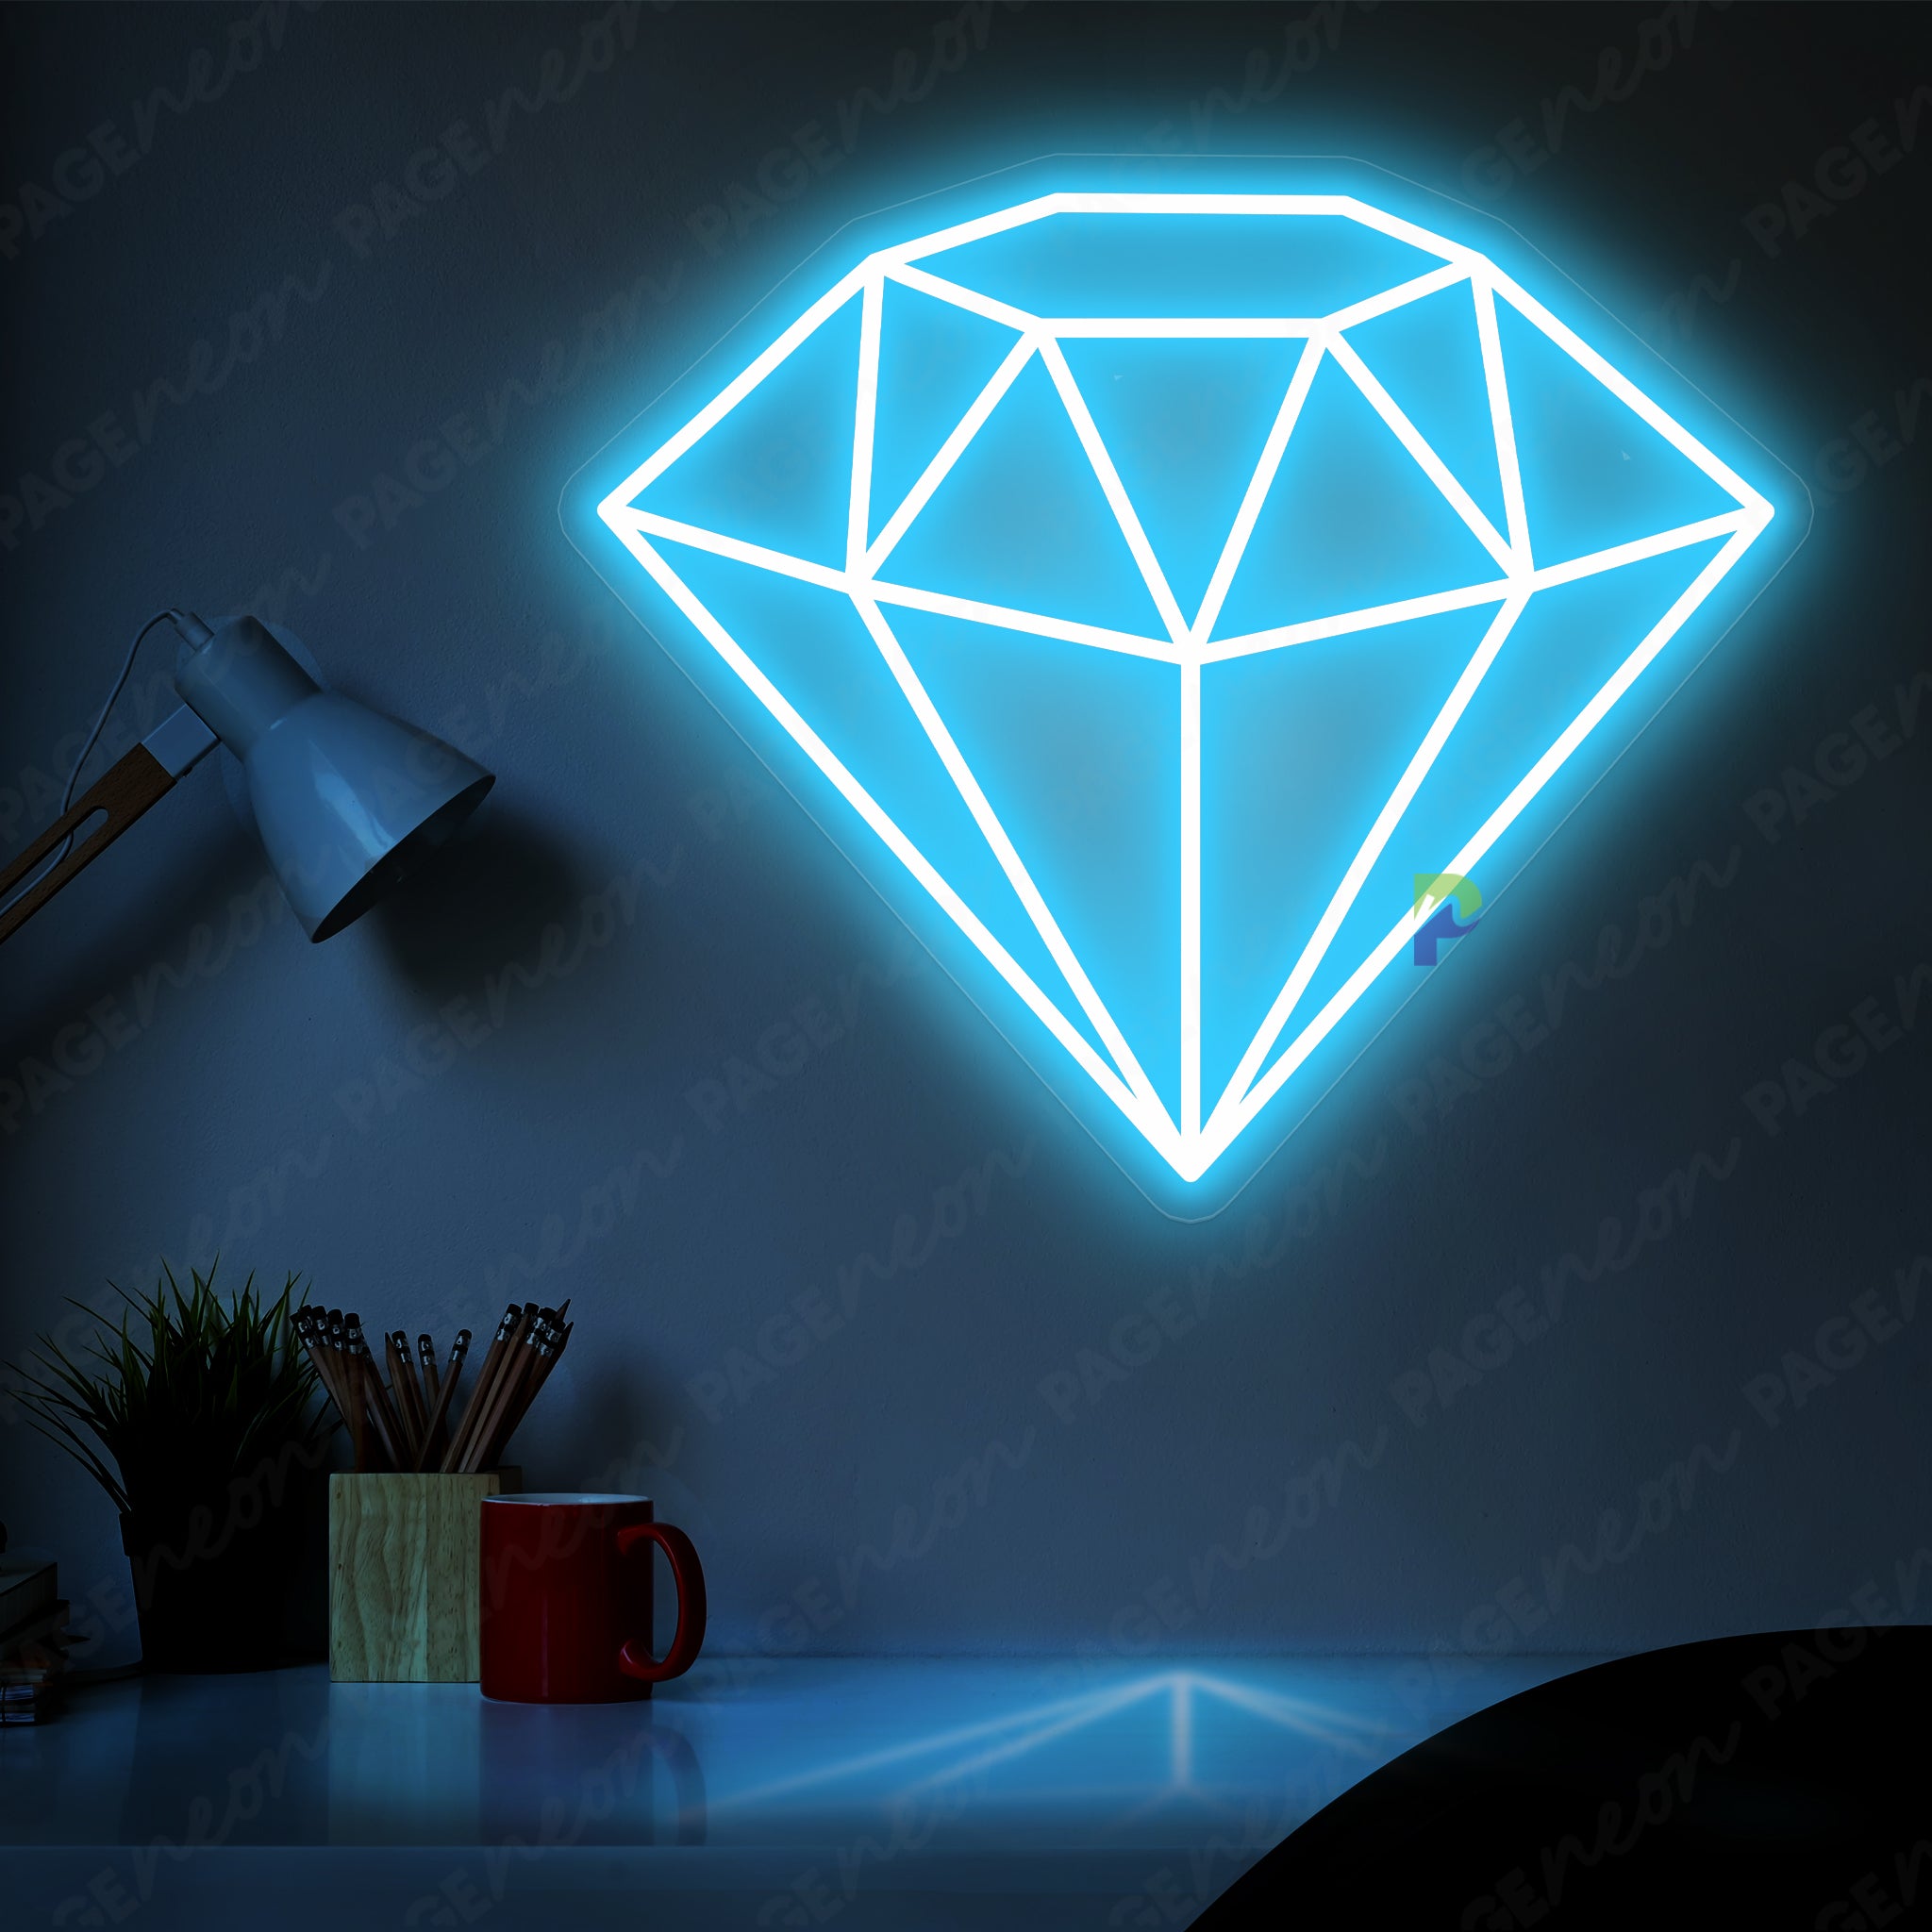 Diamond Neon Sign White Aesthetic Led Light